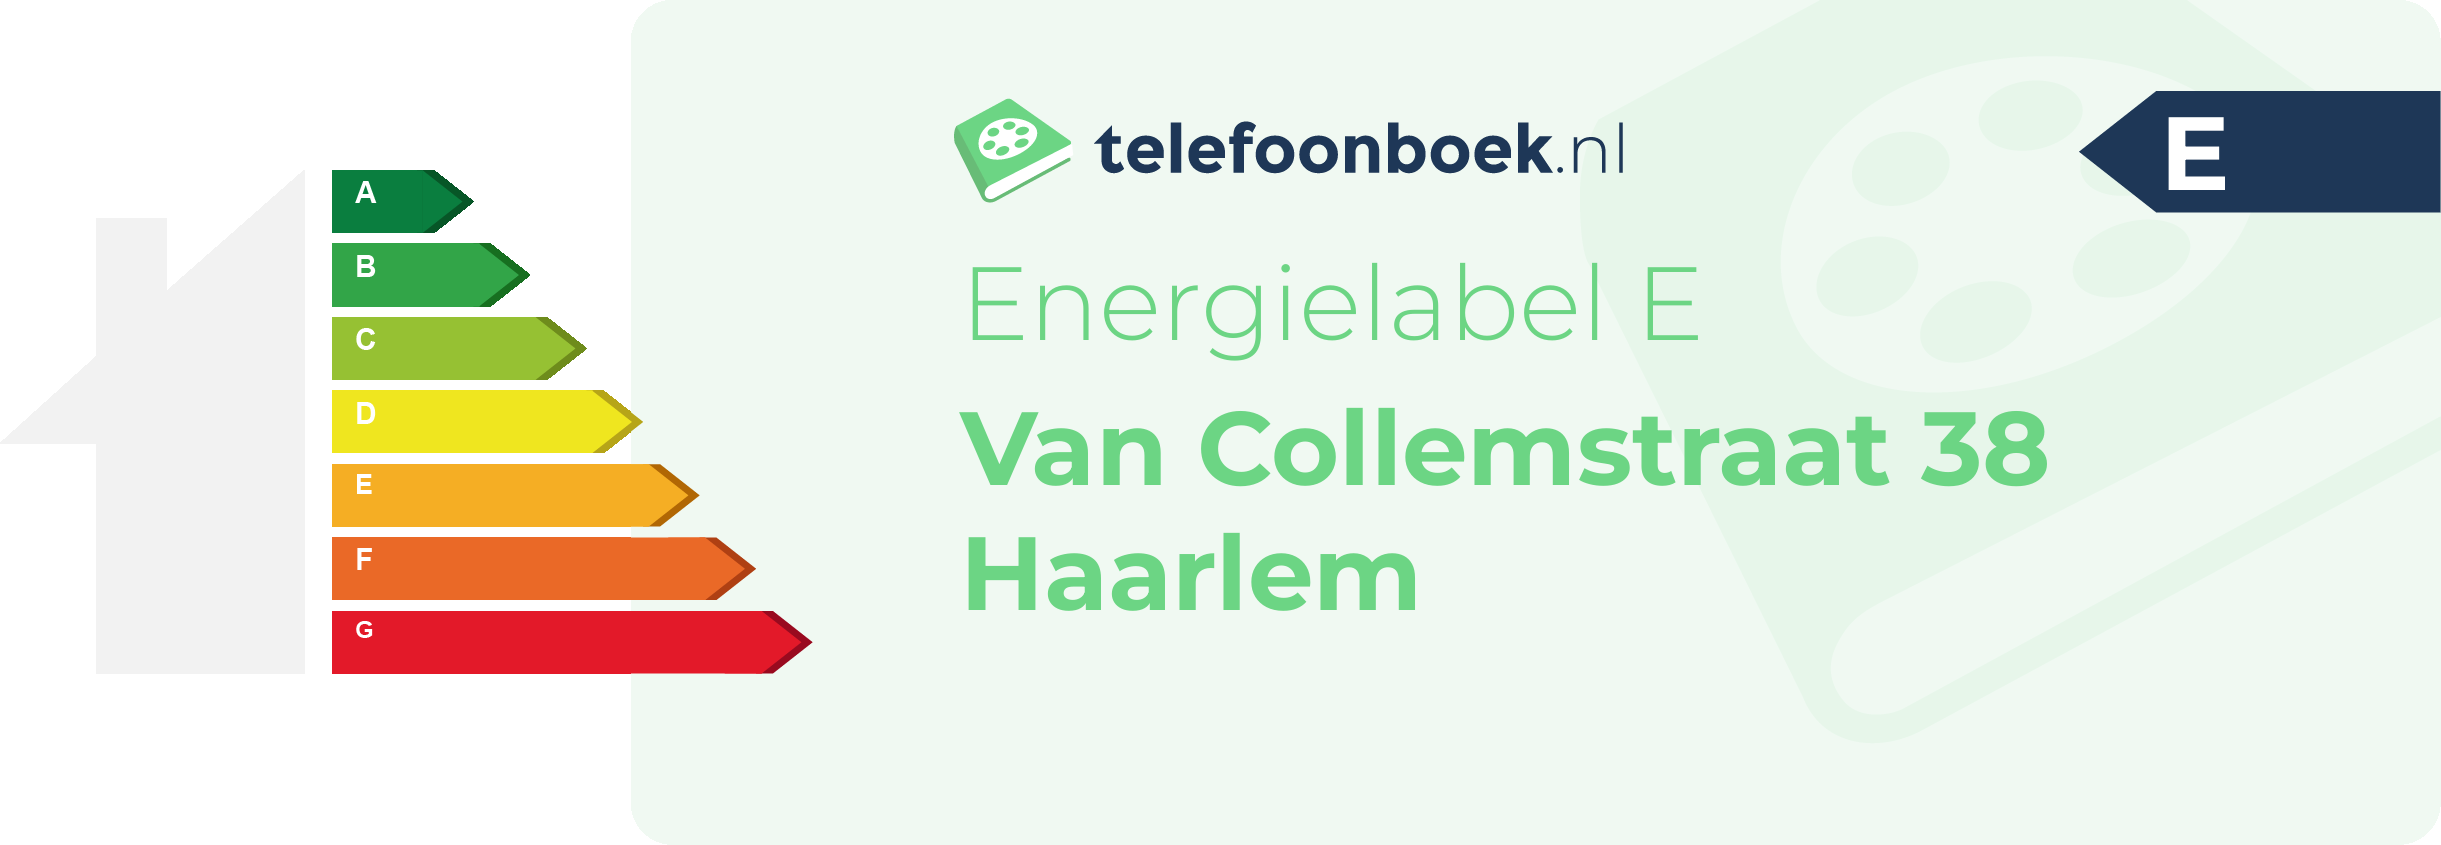 Energielabel Van Collemstraat 38 Haarlem